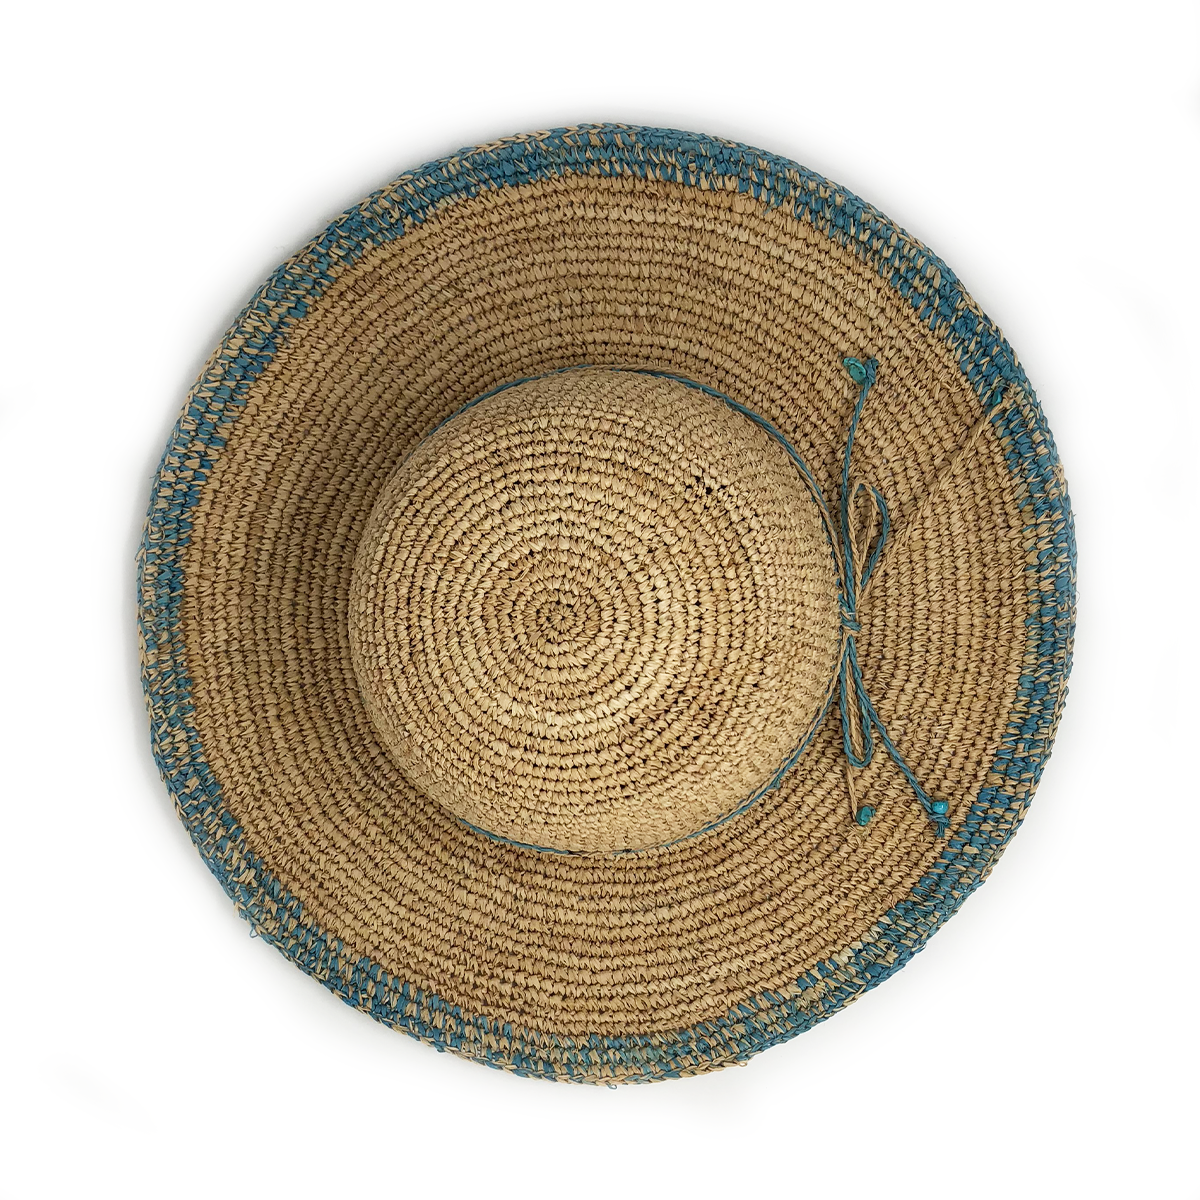 Wallaroo Women's Camille Sun Hat - Turquoise